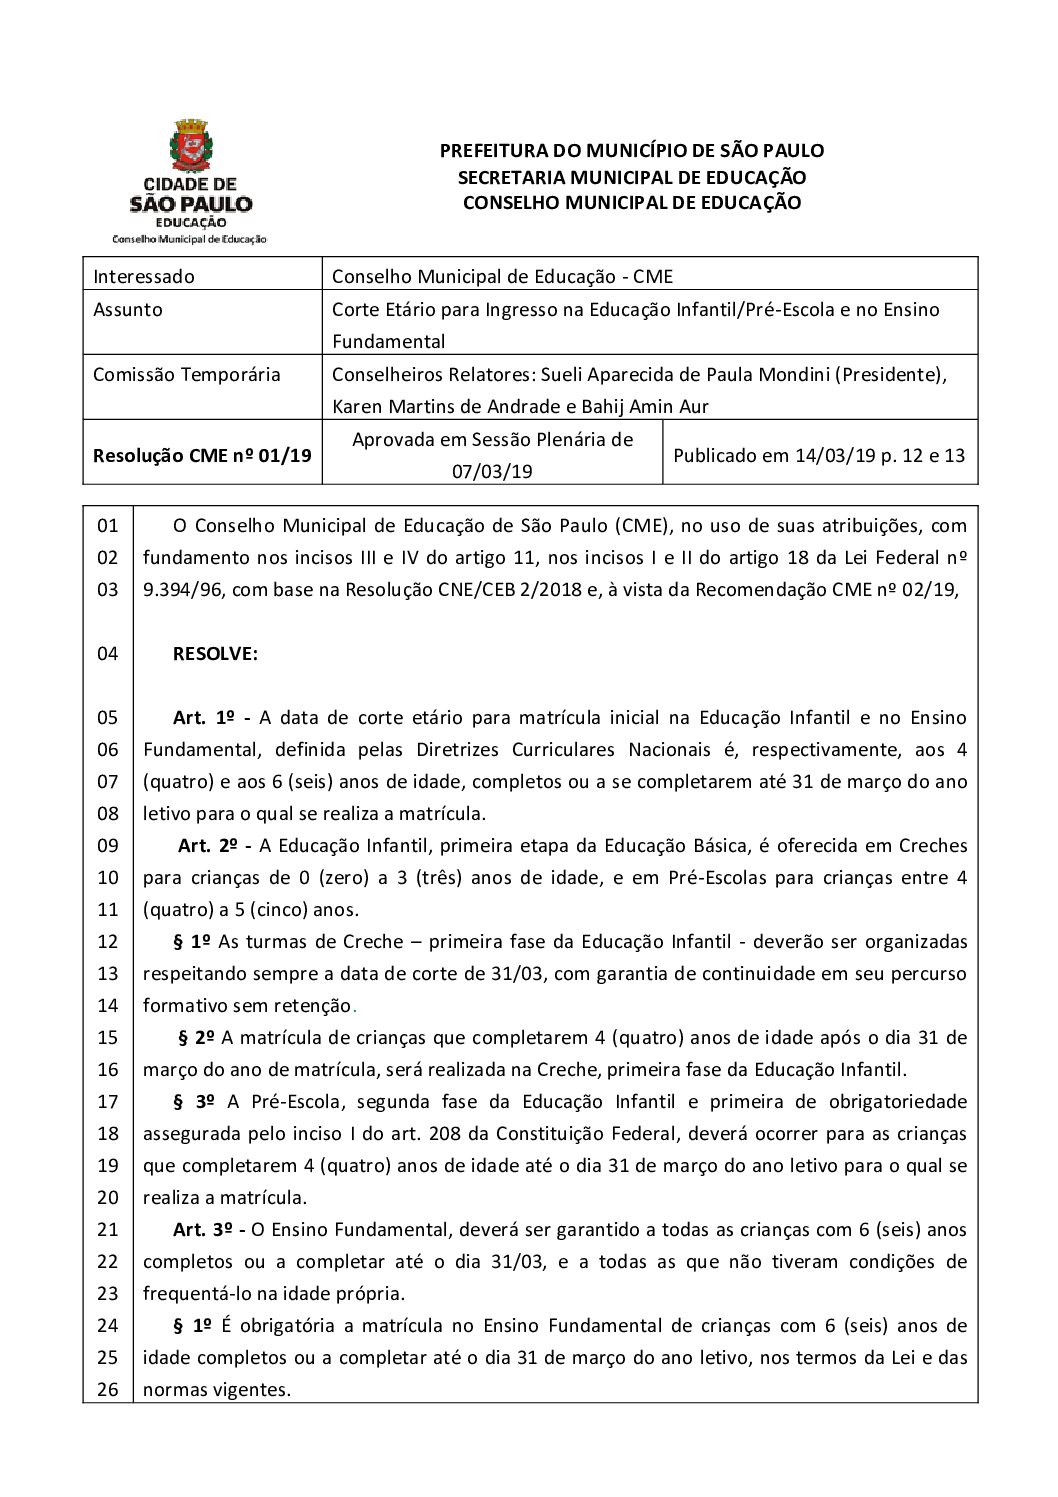 Resolução CME nº 01/2019 - Corte Etário para Ingresso na Educação Infantil/Pré-Escola e no Ensino Fundamental 